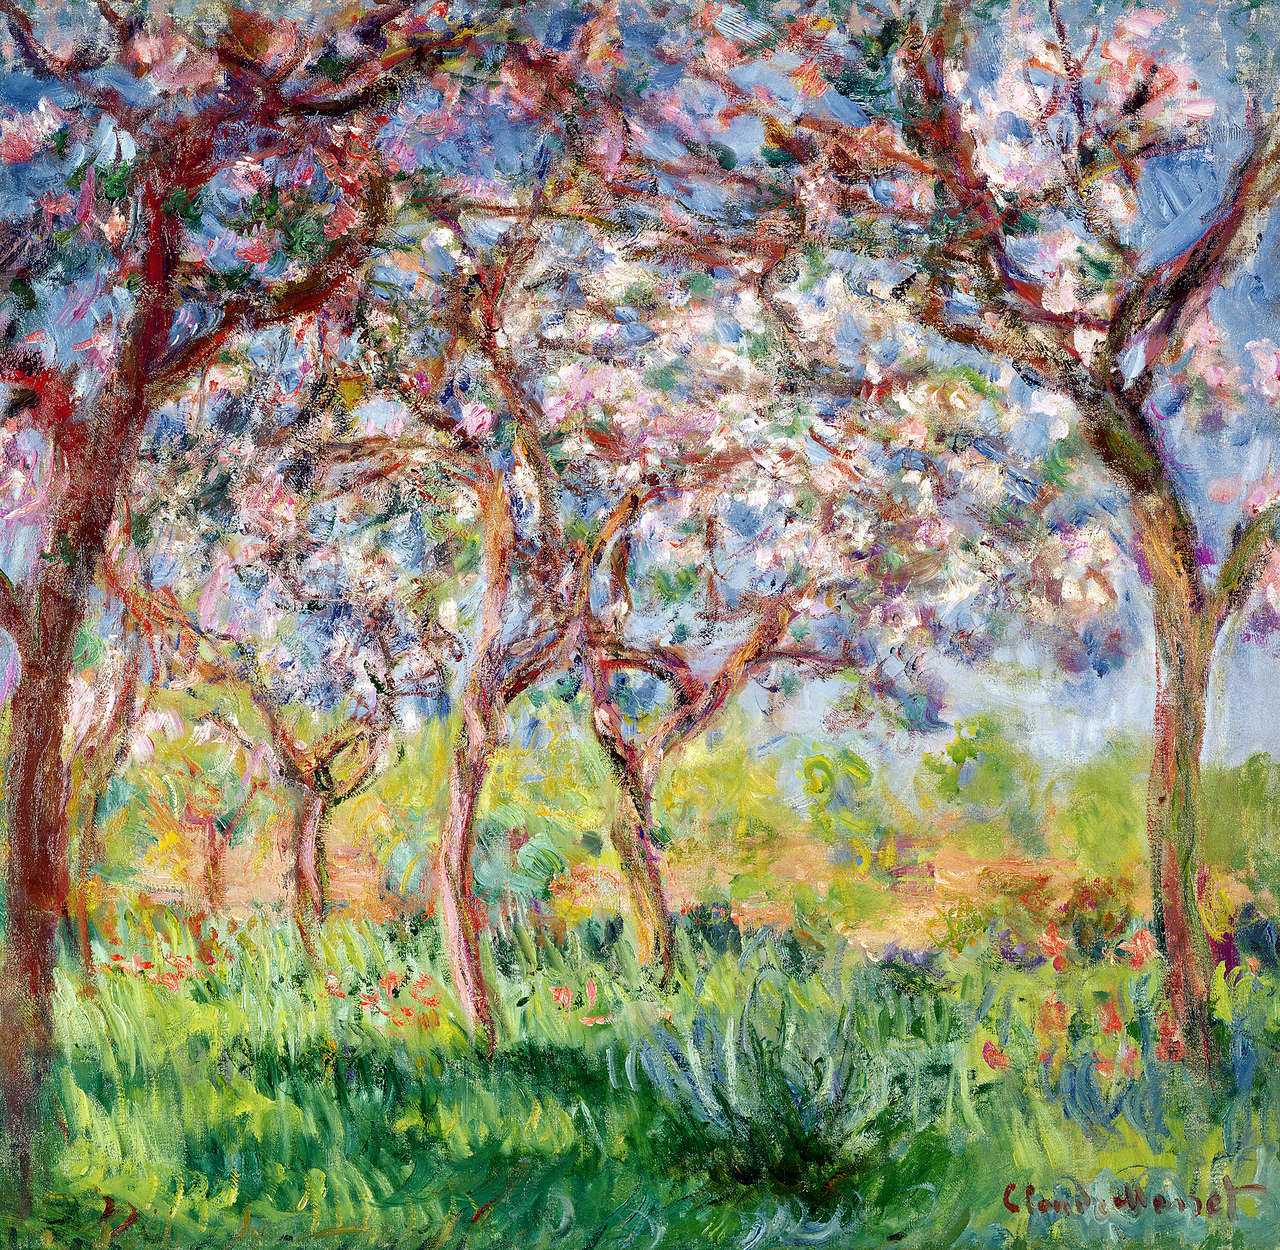             Papier peint panoramique "Printemps à Giverny" de Claude Monet
        